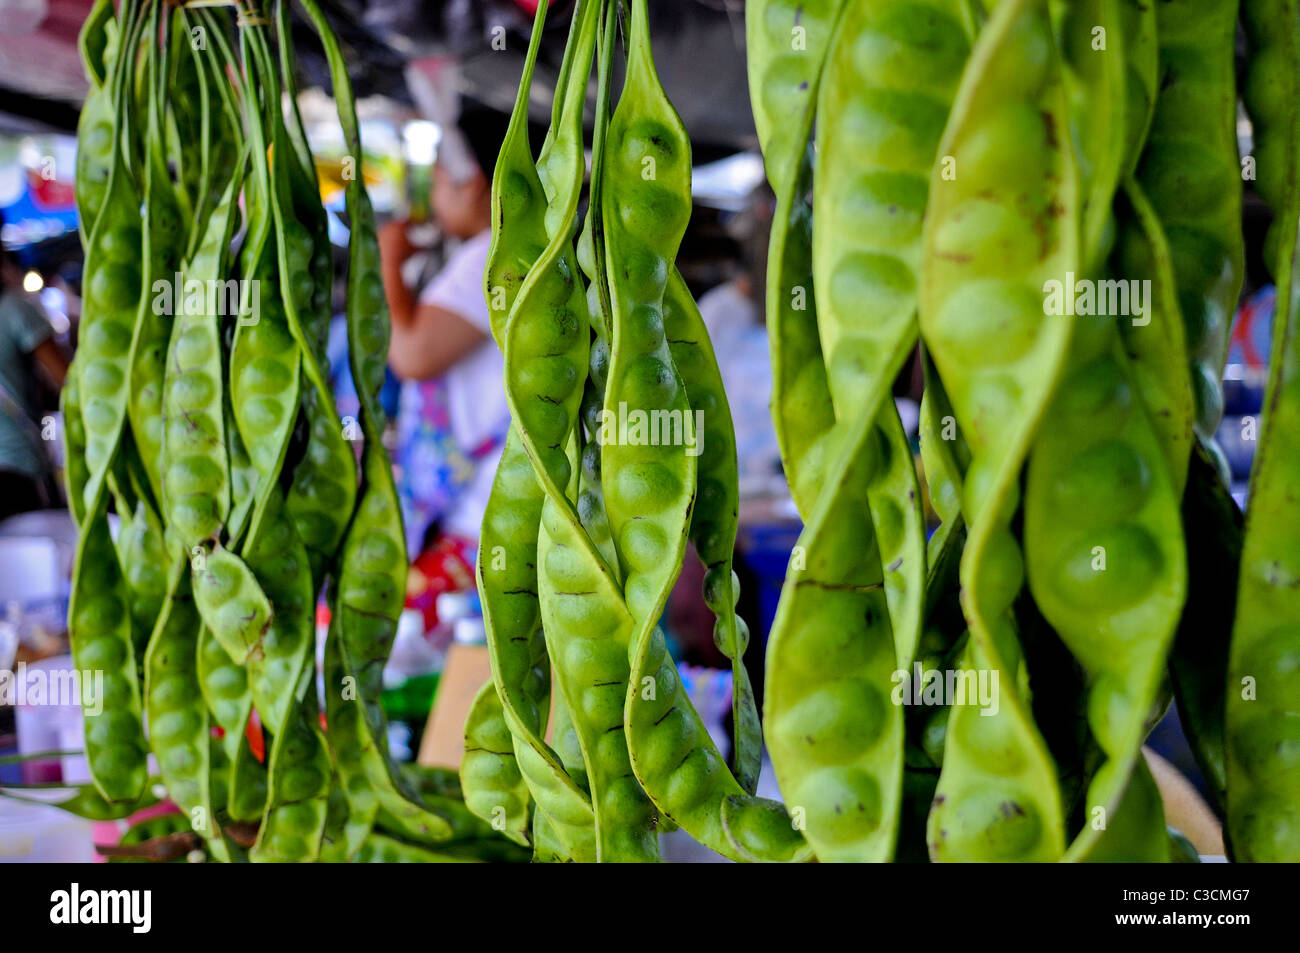 Riesige verdrehten Erbsenschoten hängen in einem tropischen Marktstand.  Ein gutes Beispiel für die Reifen lebendig und exotische Früchte in Südost-Asien. Stockfoto